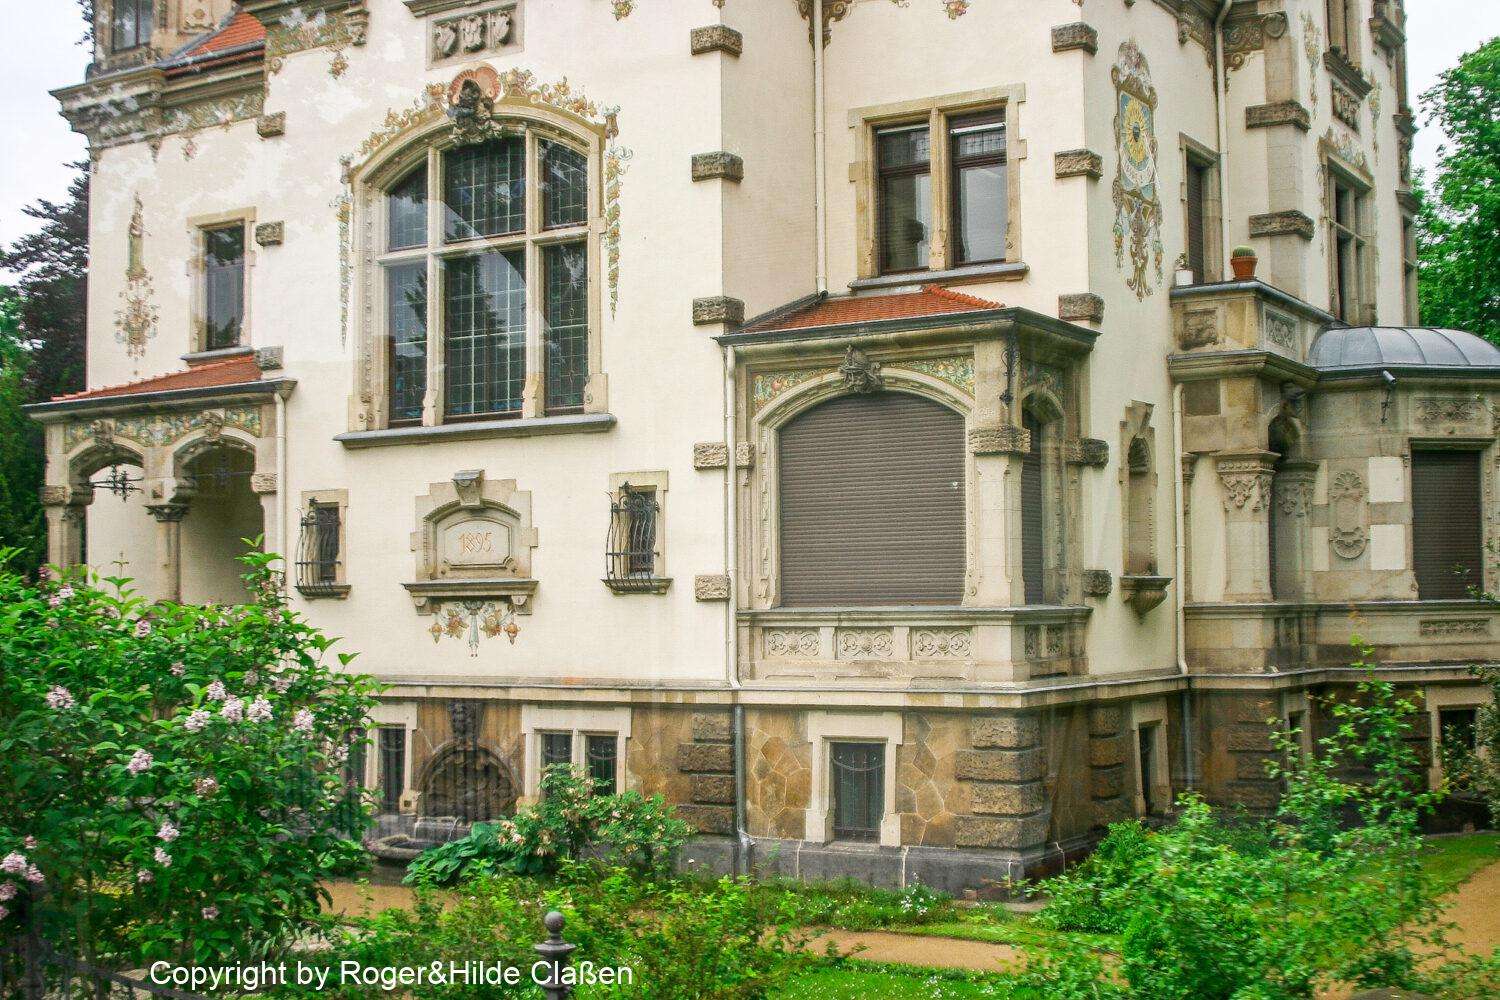 Die Villa Weigang ist eine historische Villa und steht unter Denkmalschutz. Sie befindet sich in der Goetheallee 55 im Dresdner Stadtteil Blasewitz. Sie ist wohl die schönste Villa der Blasewitzer Villen